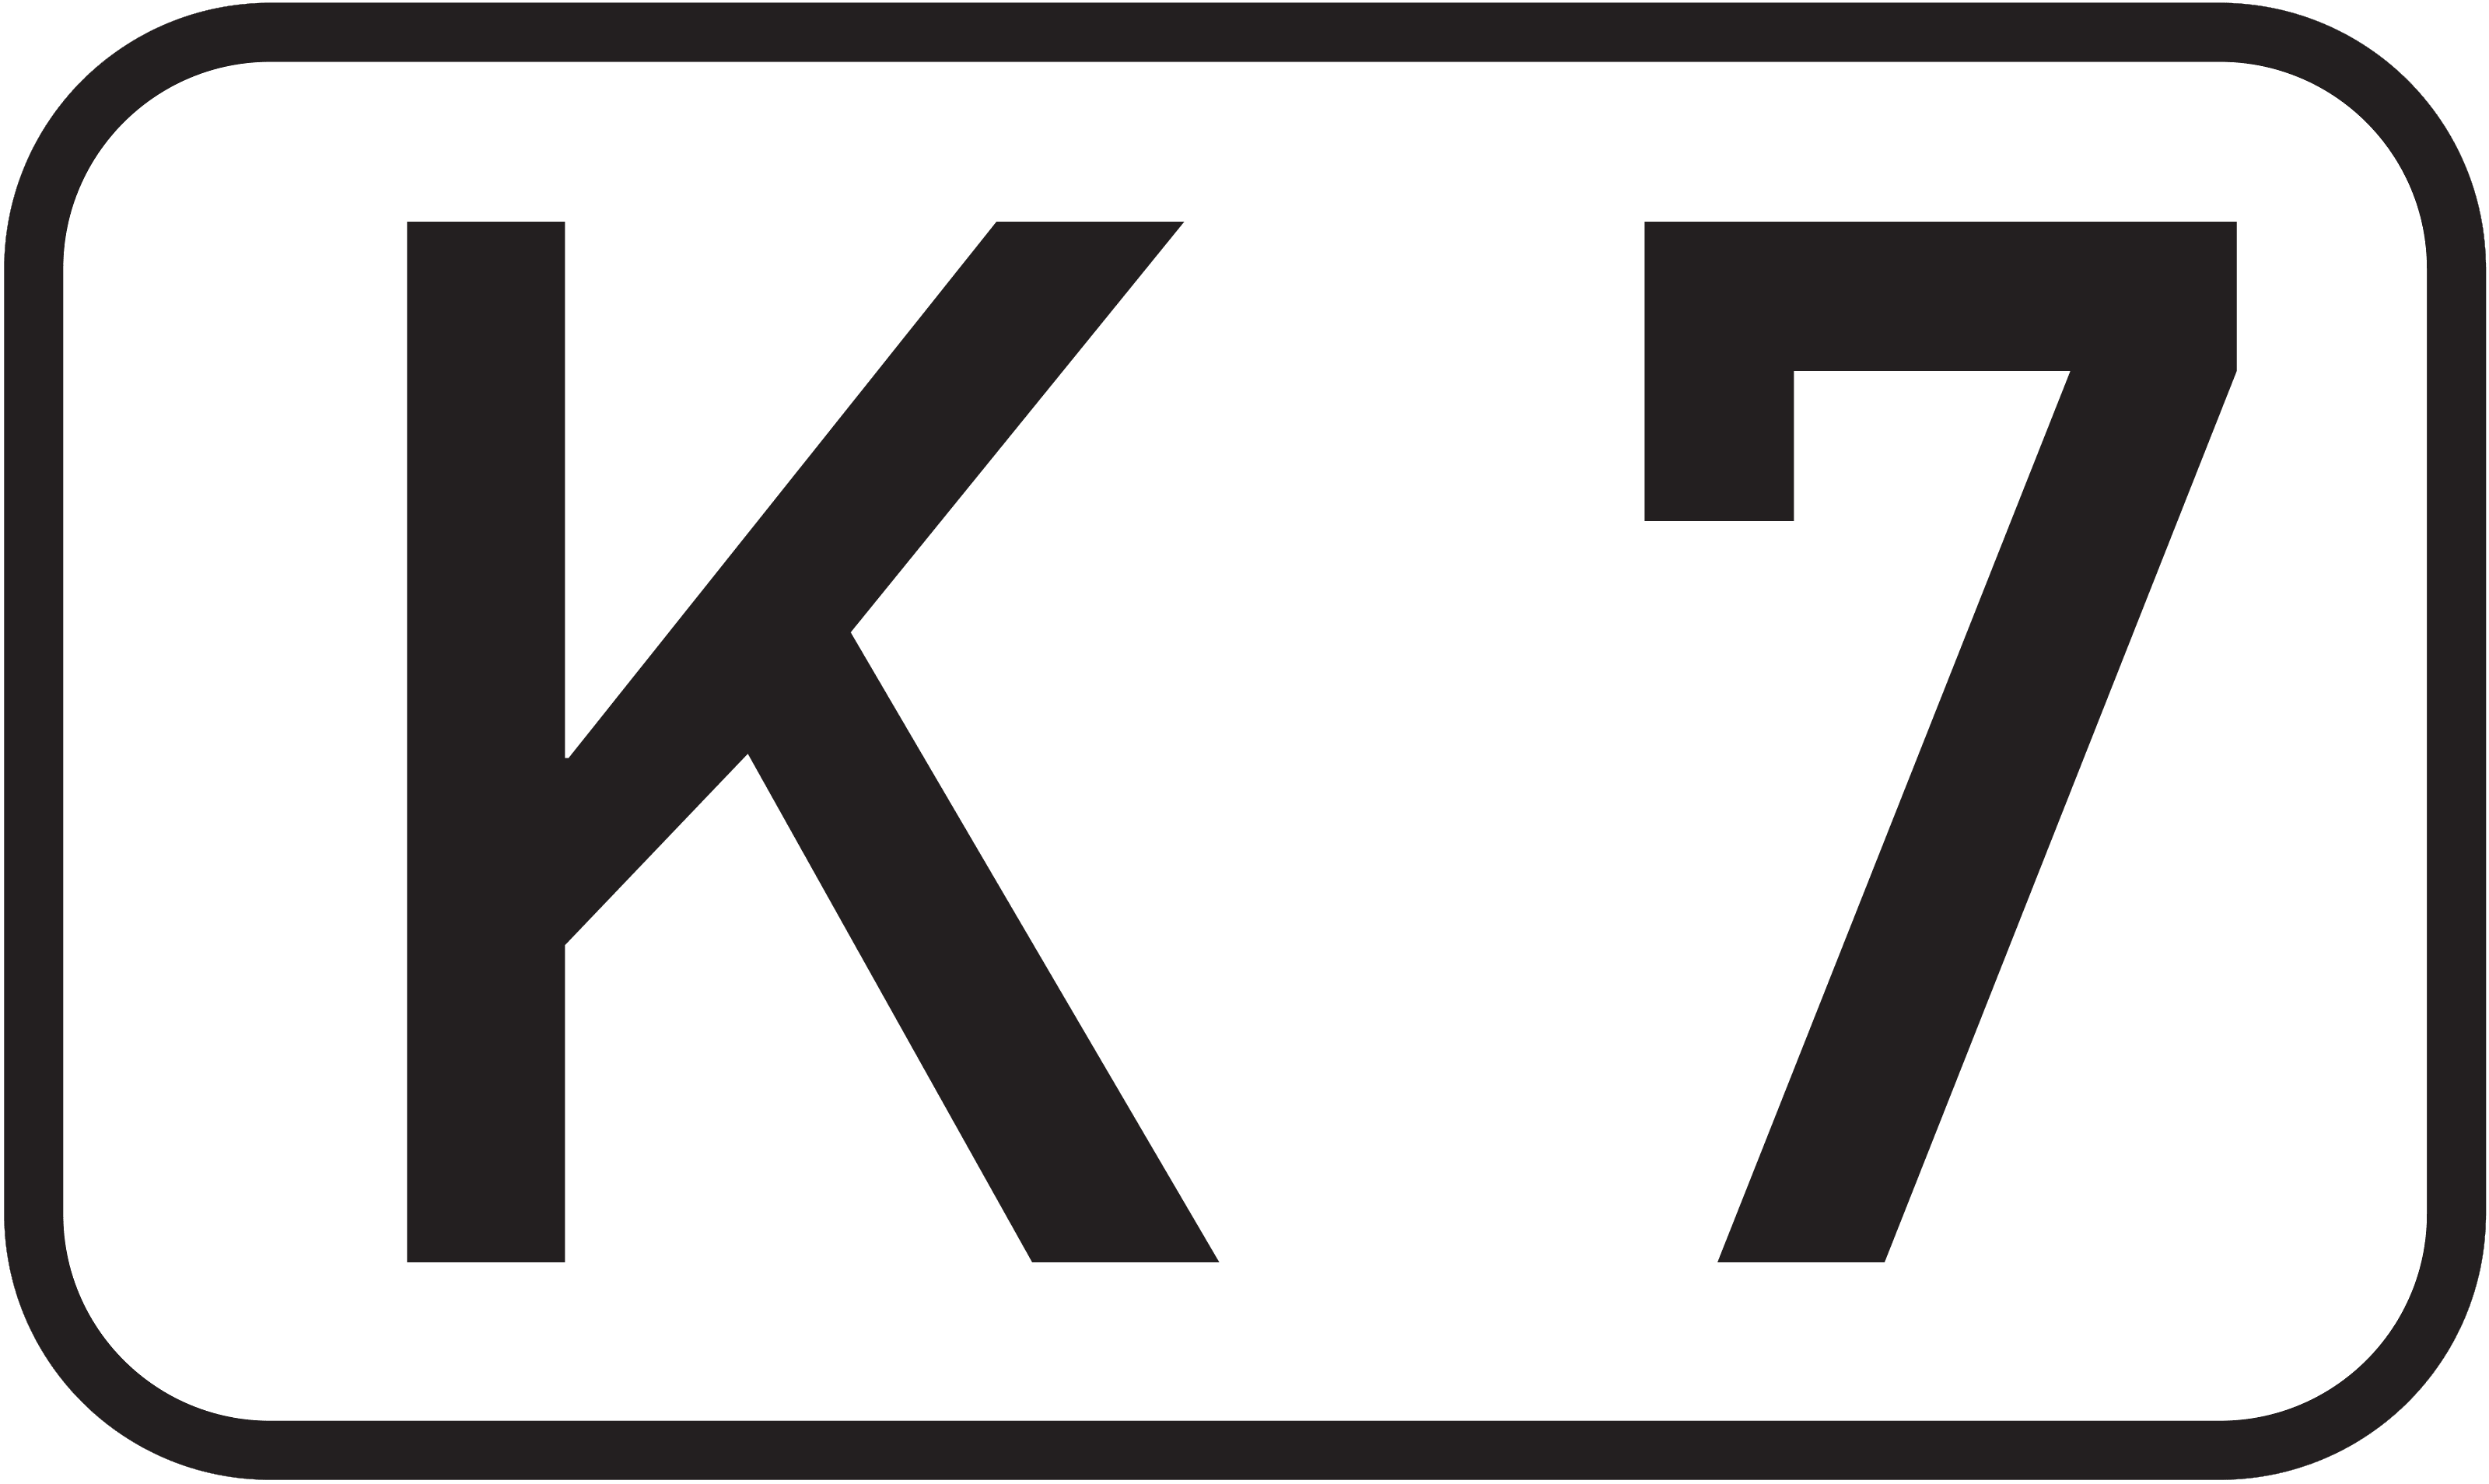 Bundesstraße K 7